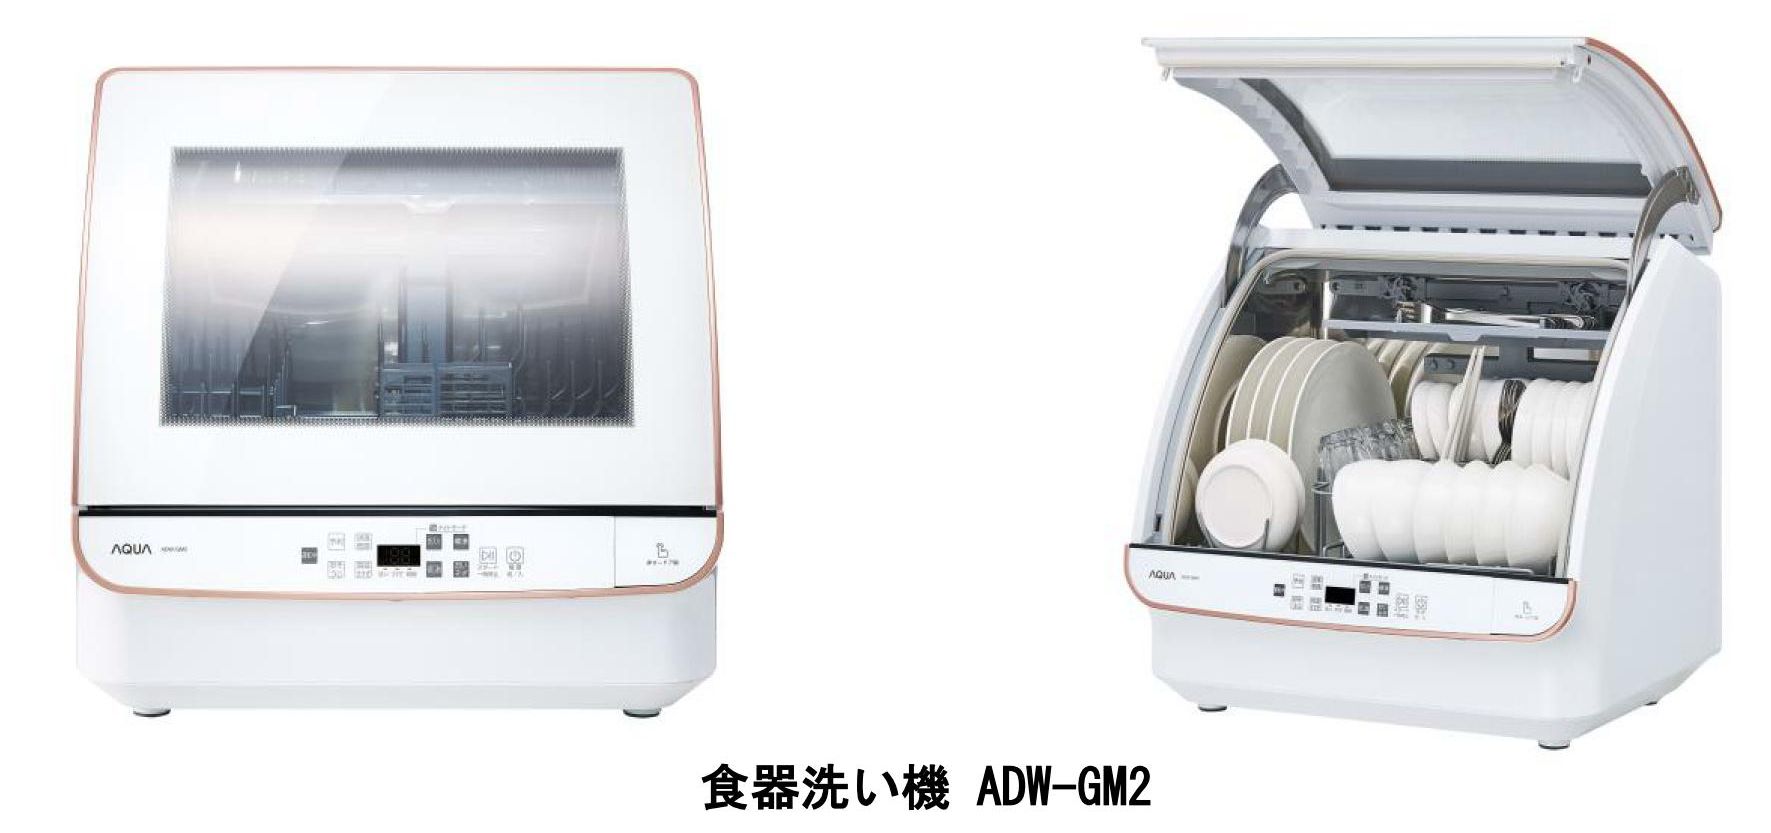 やりとり中】AQUA 食洗機 食器洗い機ADW-GM1 、2019年度製 - 生活家電